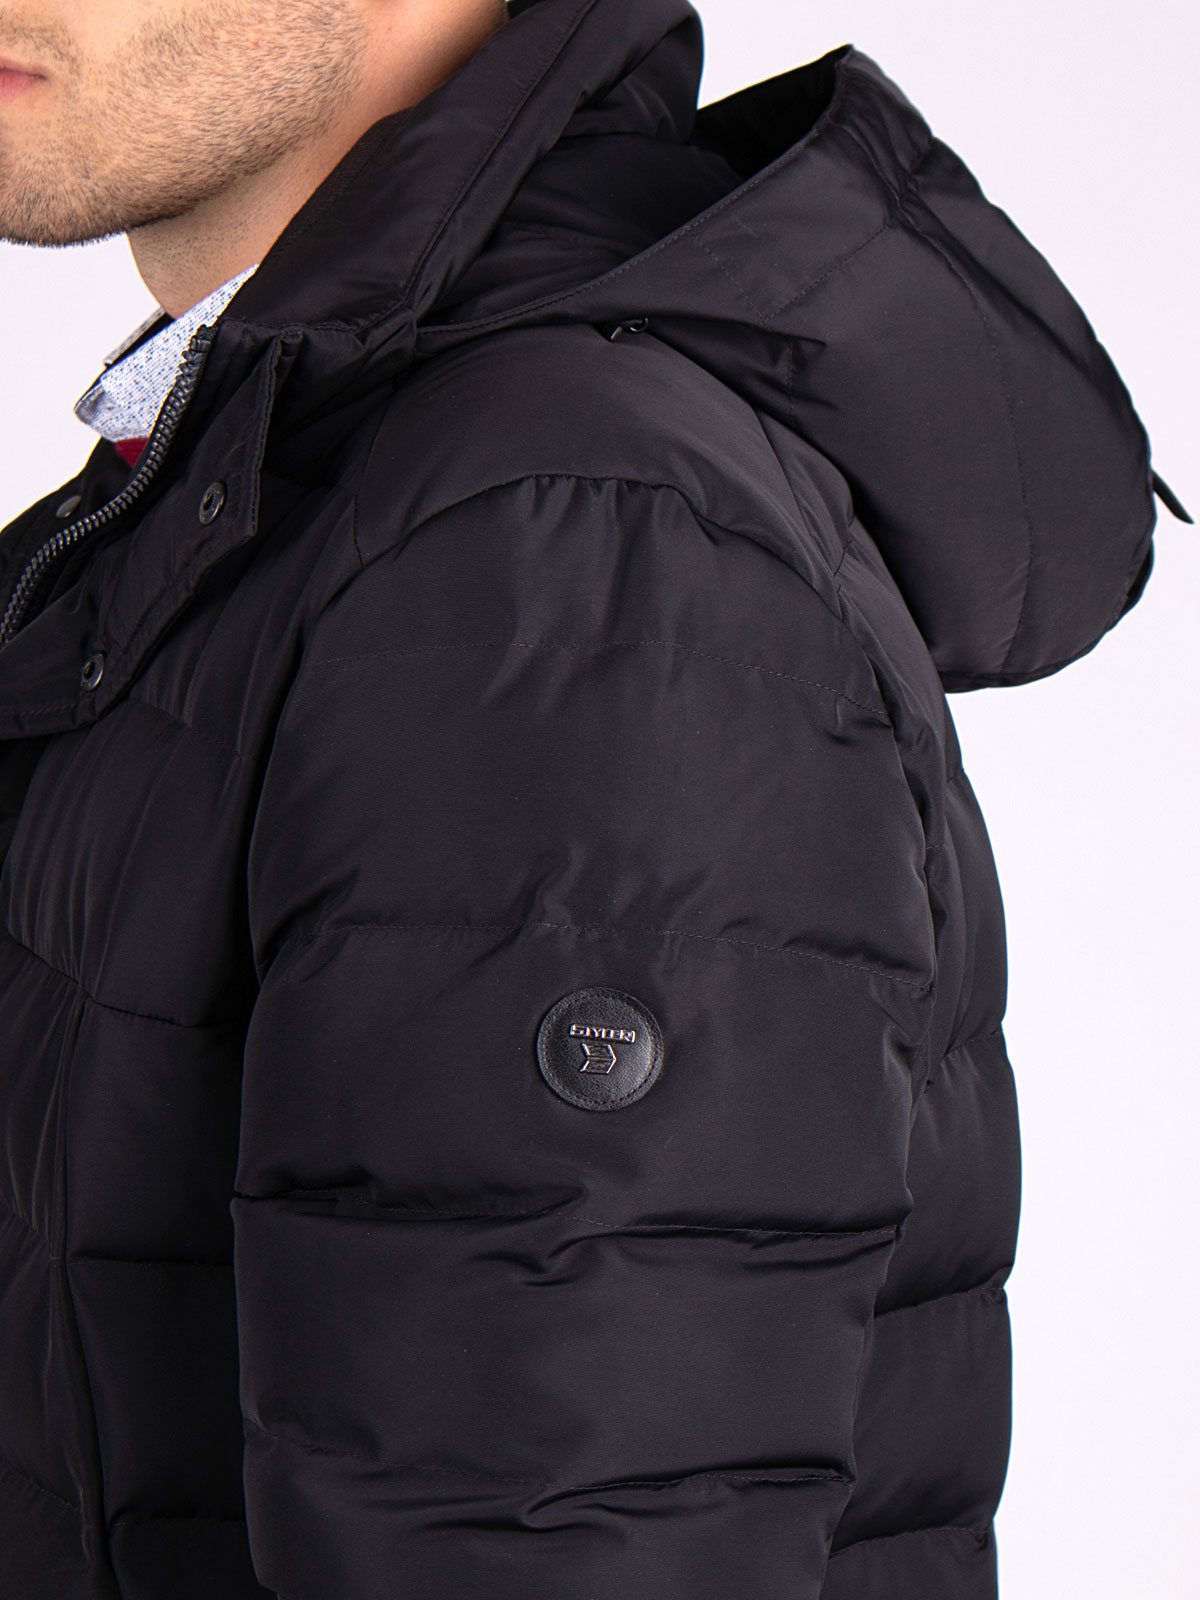 Jachetă neagră lungă matlasată cu glugă - 65106 € 151.29 img2